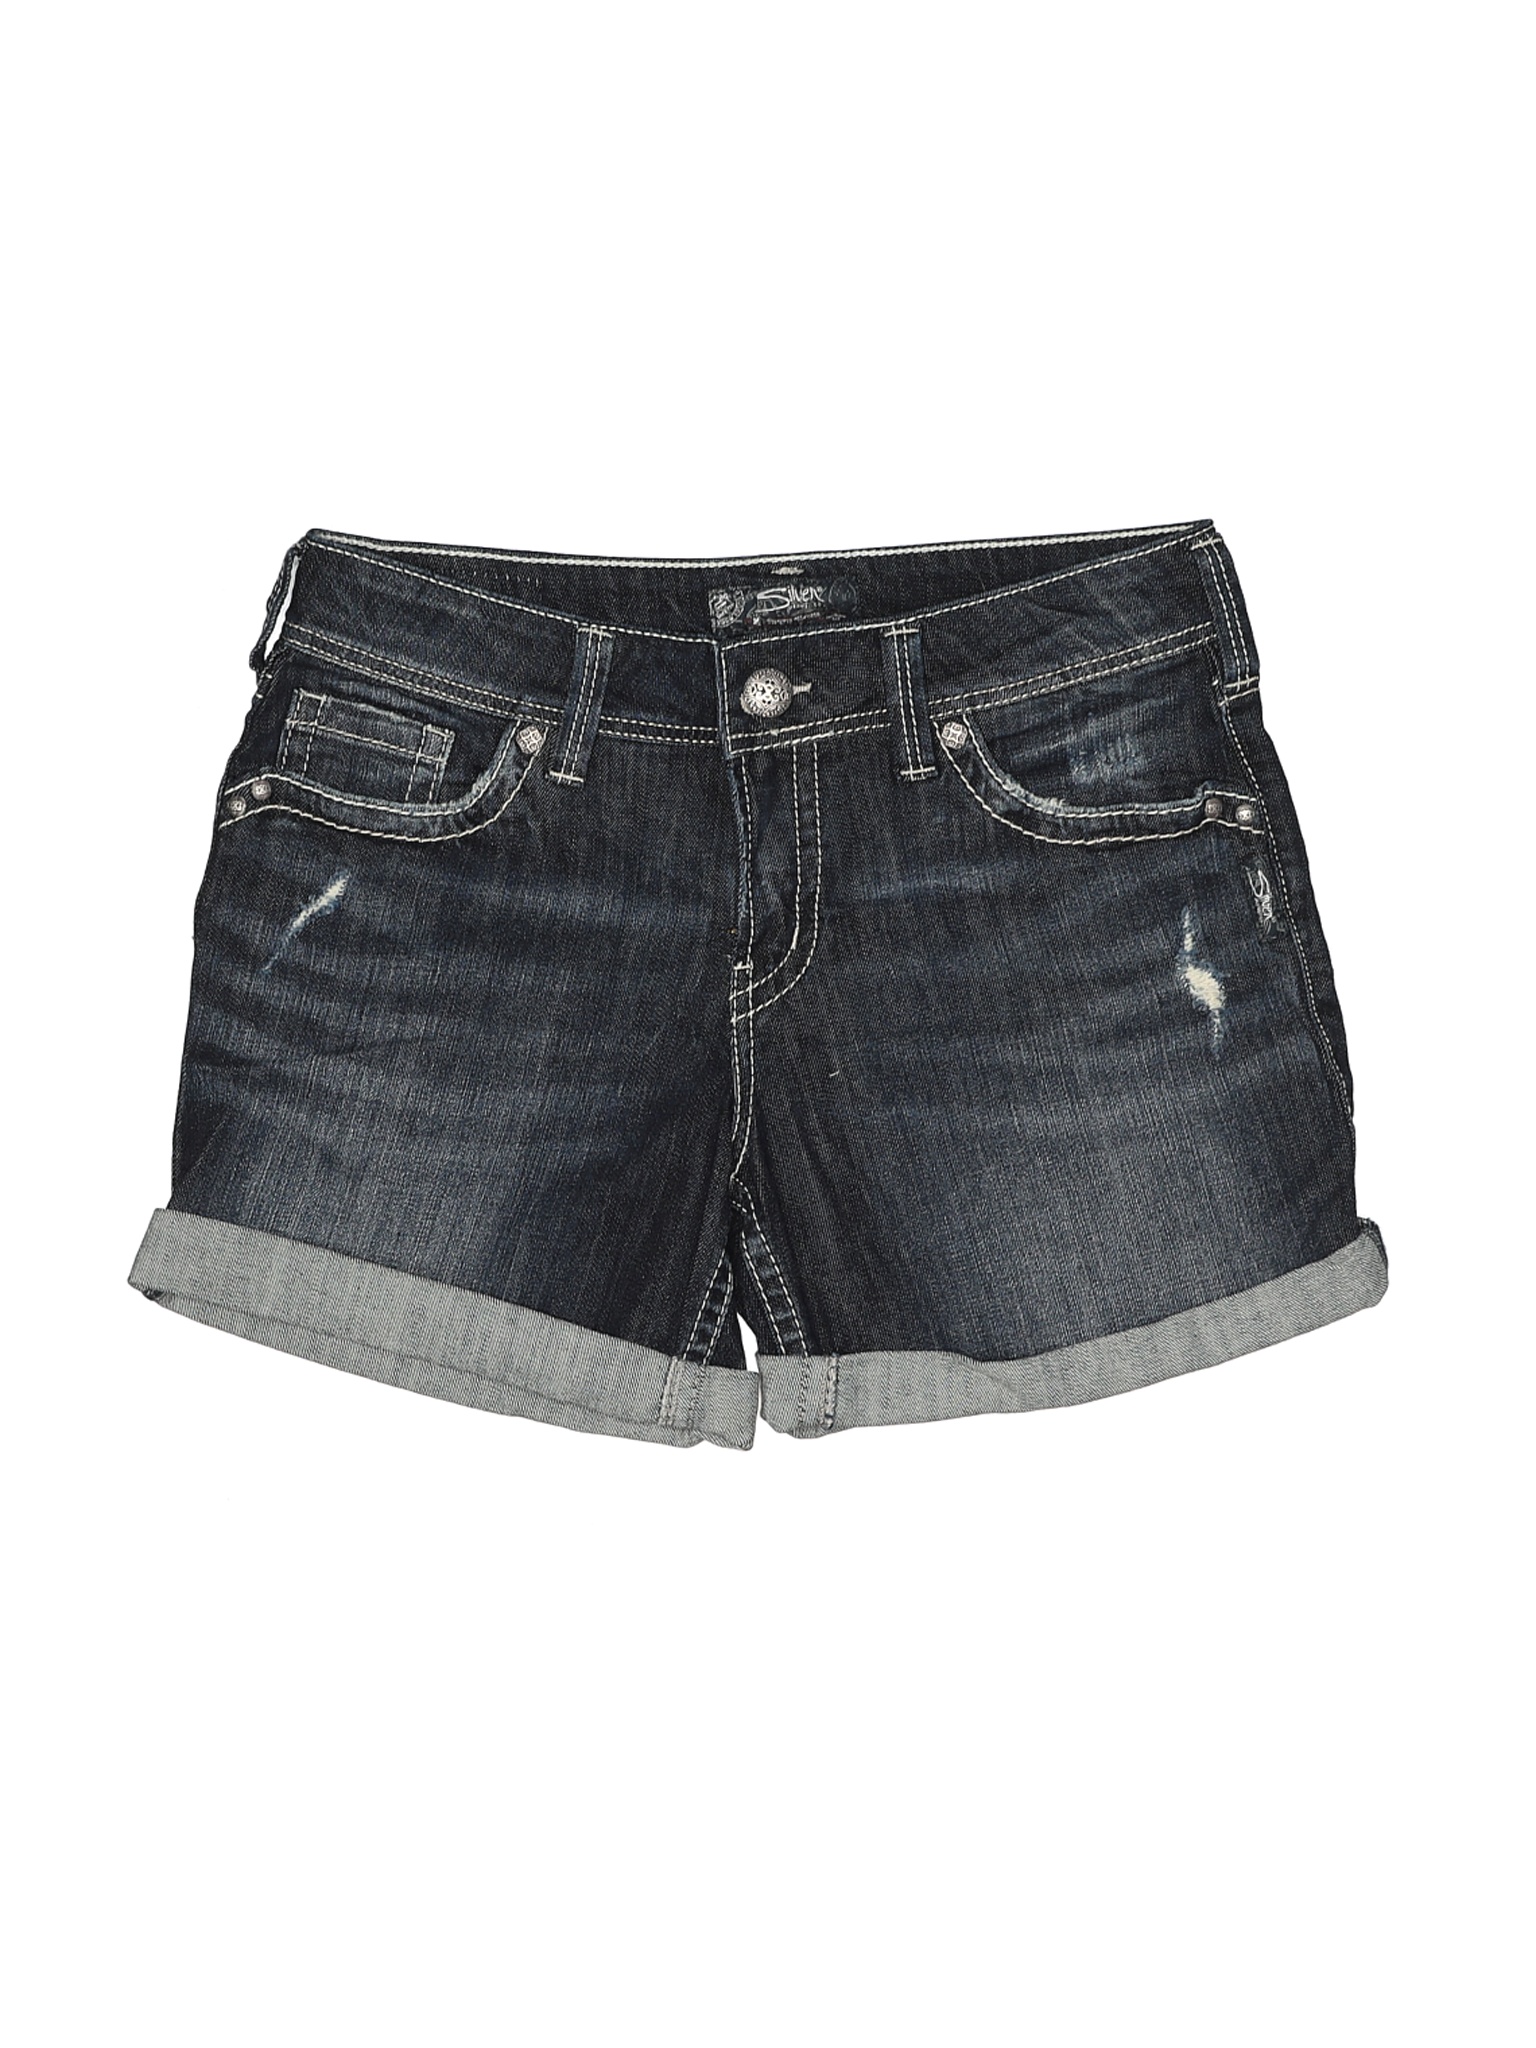 Silver Jeans Co. Women Black Denim Shorts 30W | eBay